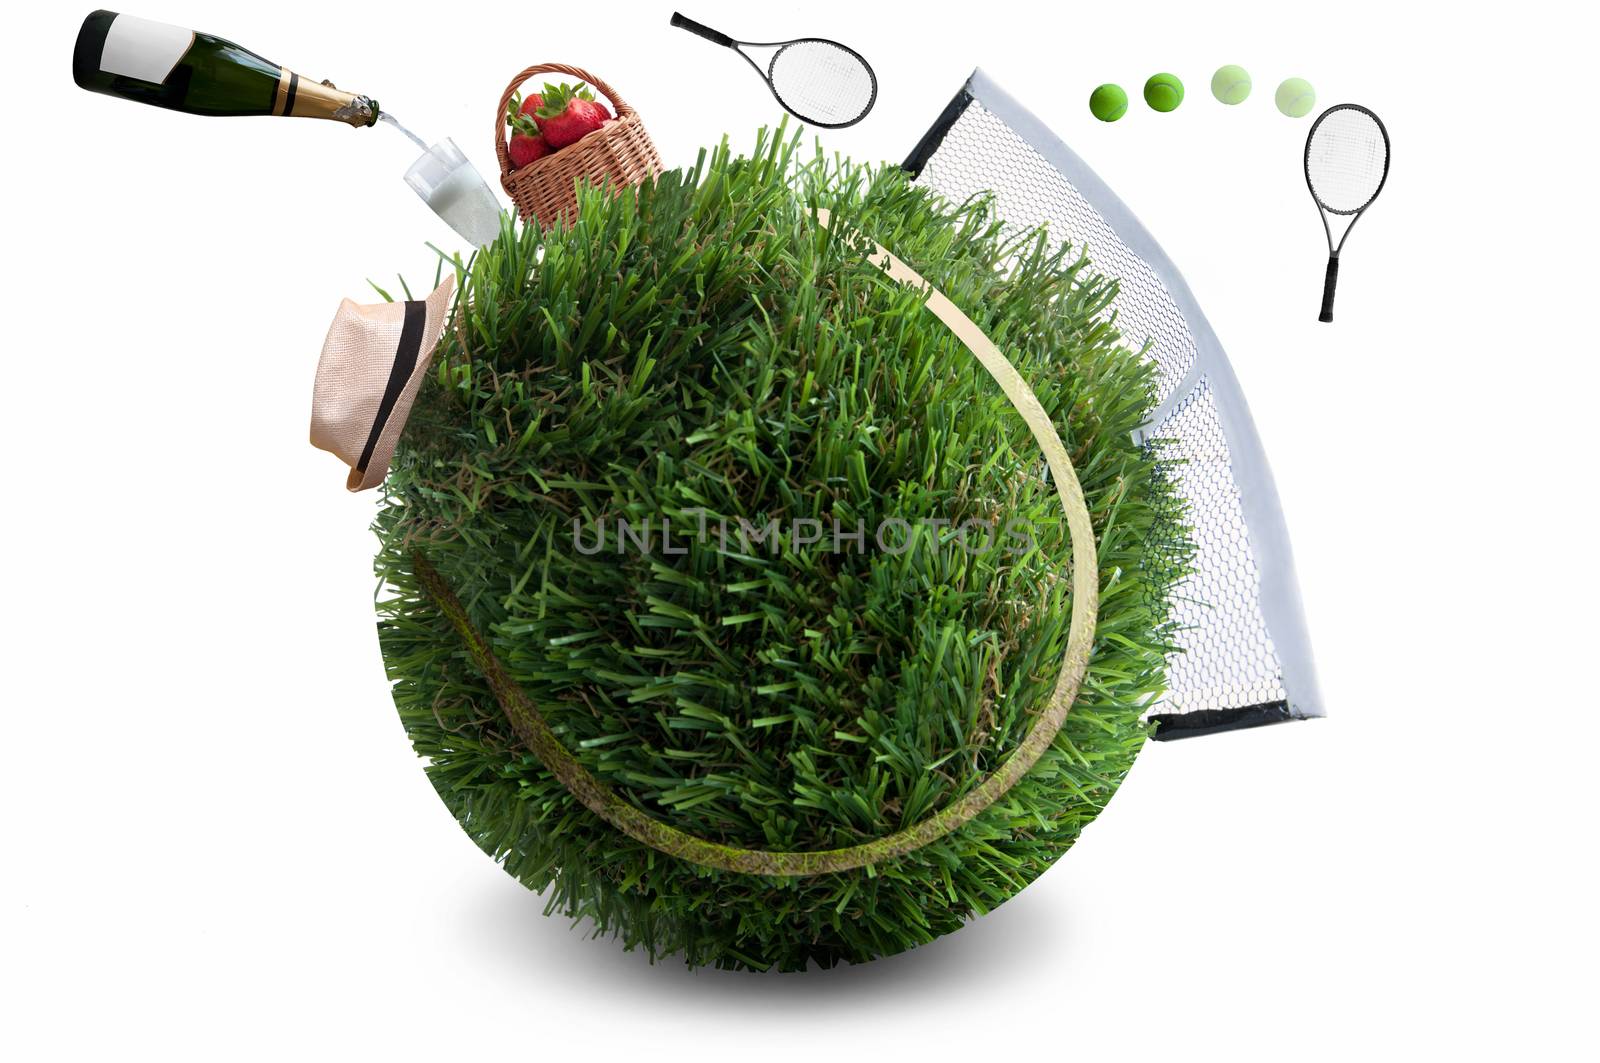 Summer grass tennis concept by unikpix